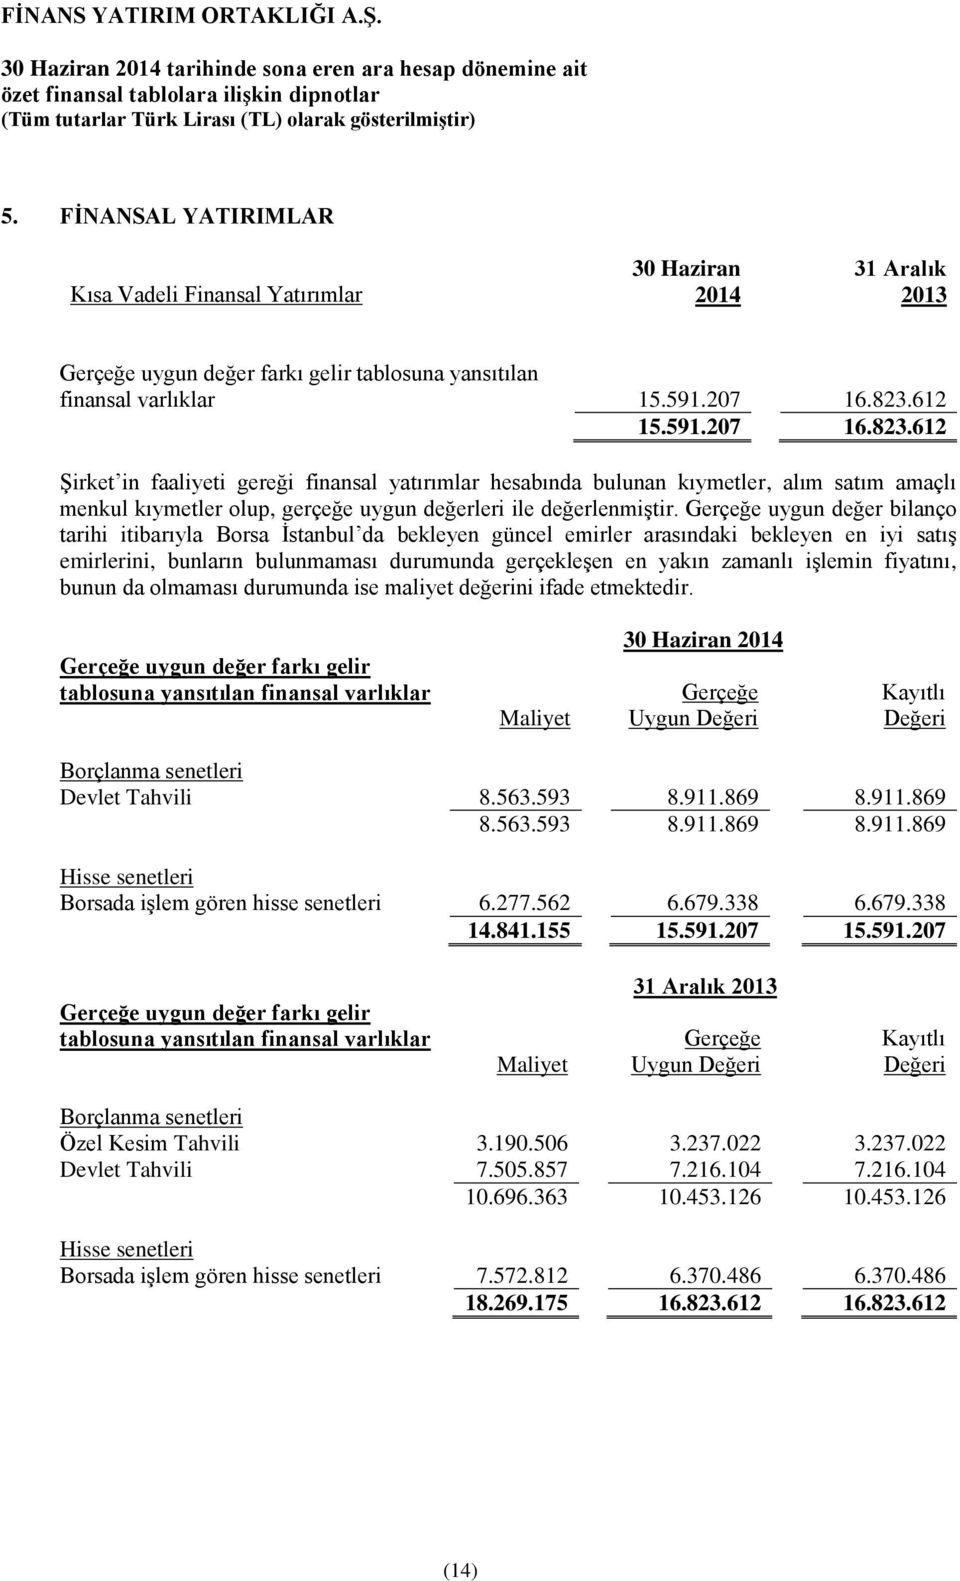 Gerçeğe uygun değer bilanço tarihi itibarıyla Borsa İstanbul da bekleyen güncel emirler arasındaki bekleyen en iyi satış emirlerini, bunların bulunmaması durumunda gerçekleşen en yakın zamanlı